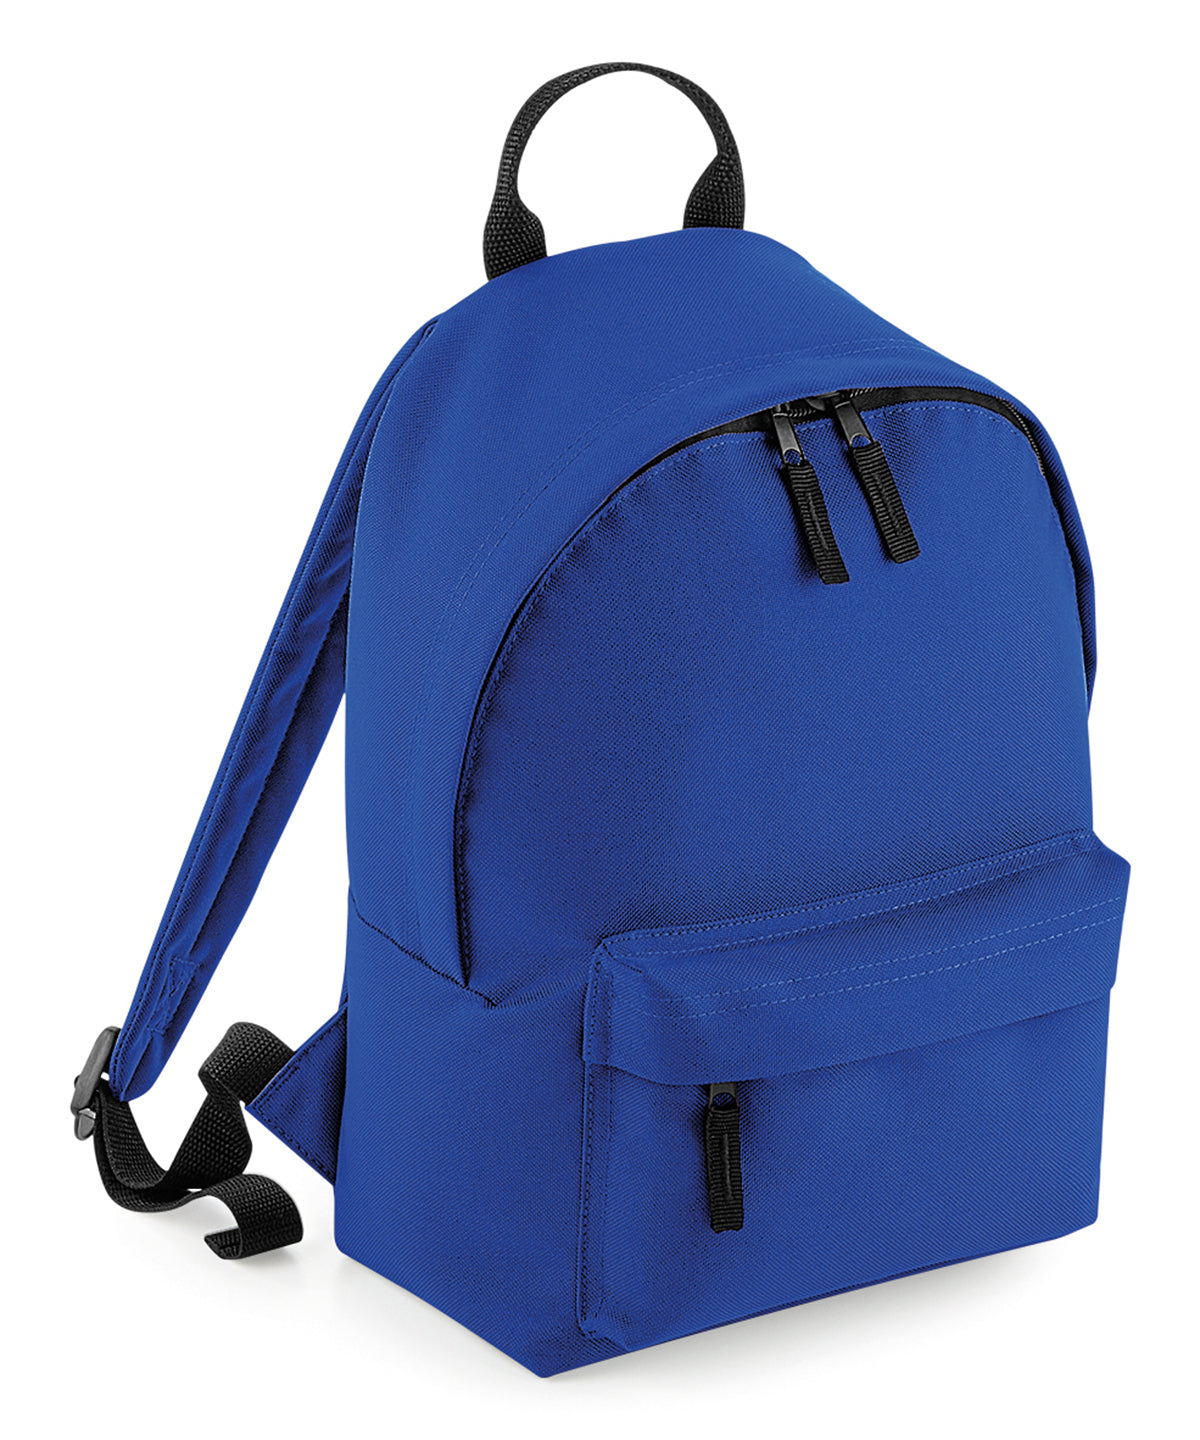 Töskur - Mini Fashion Backpack